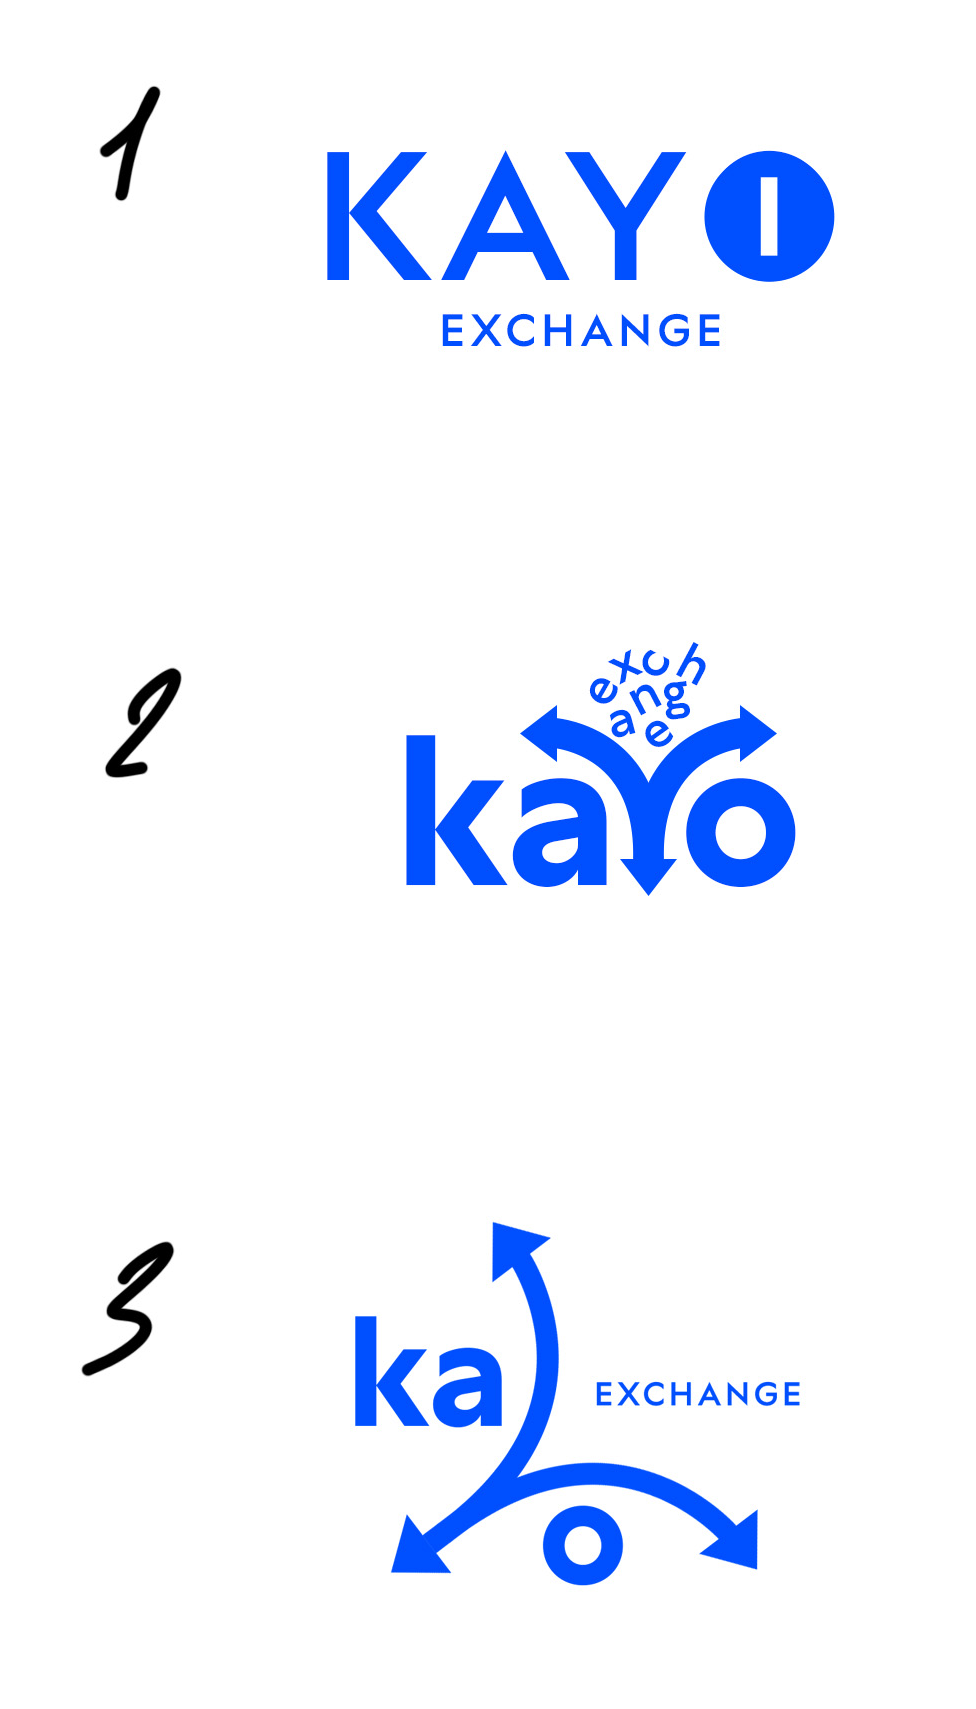 kayo exchange process 01